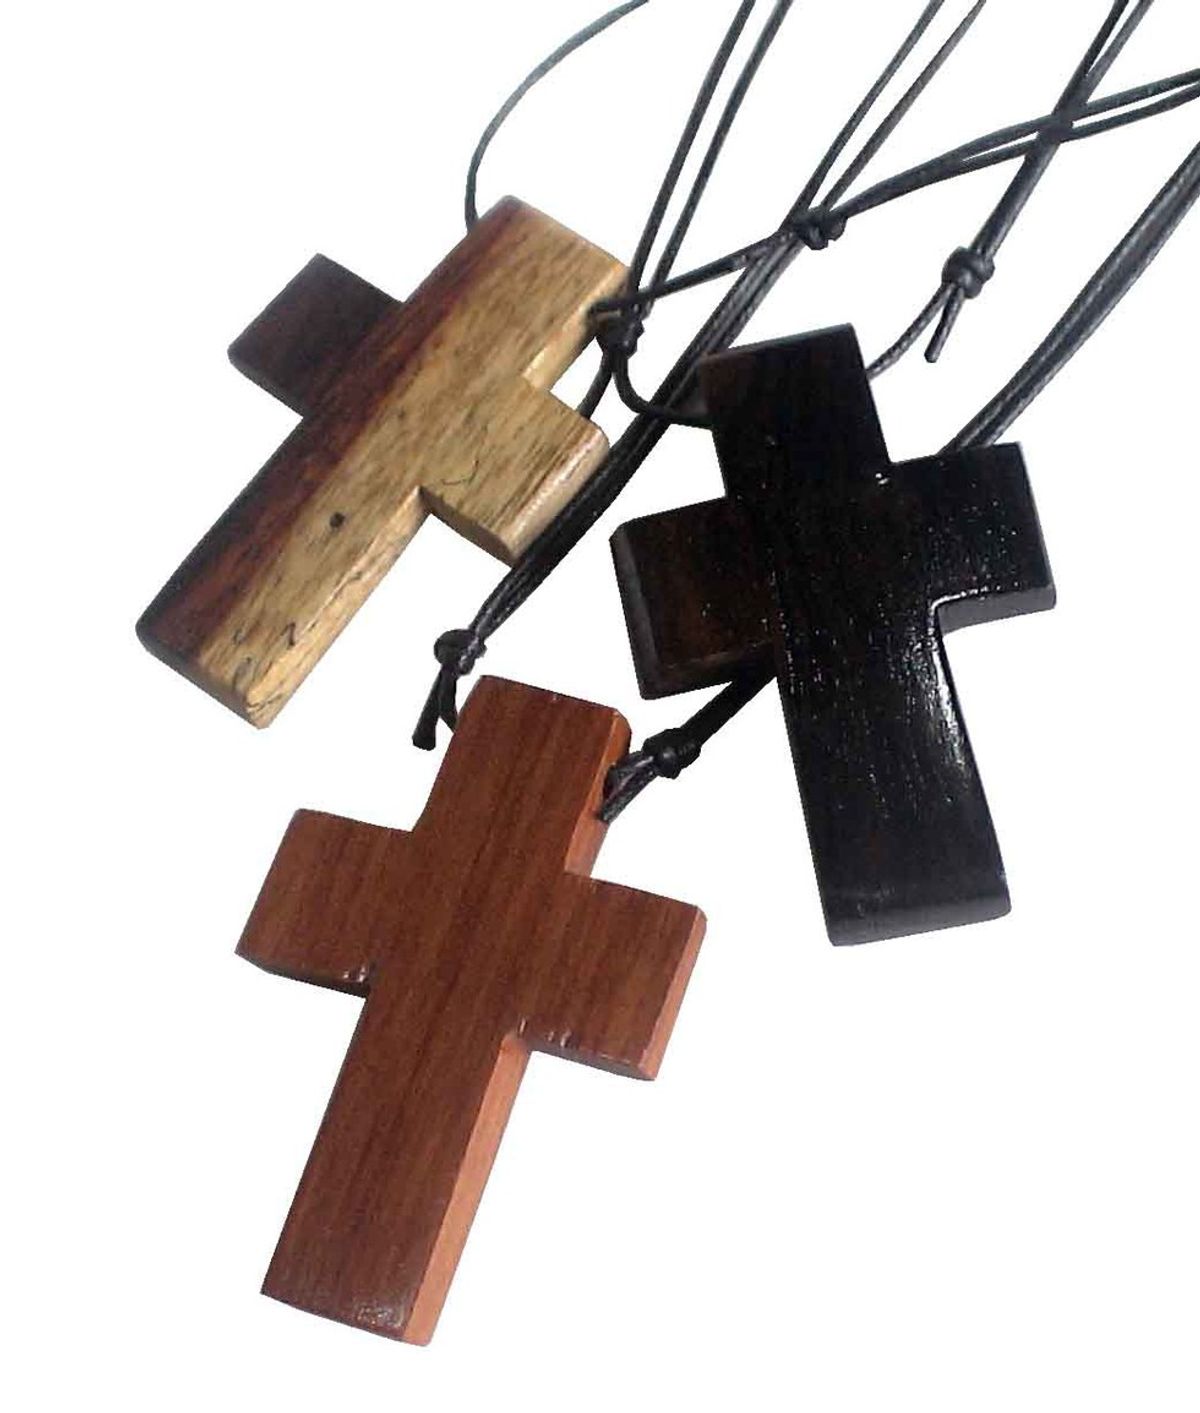 Why I Wear A Cross